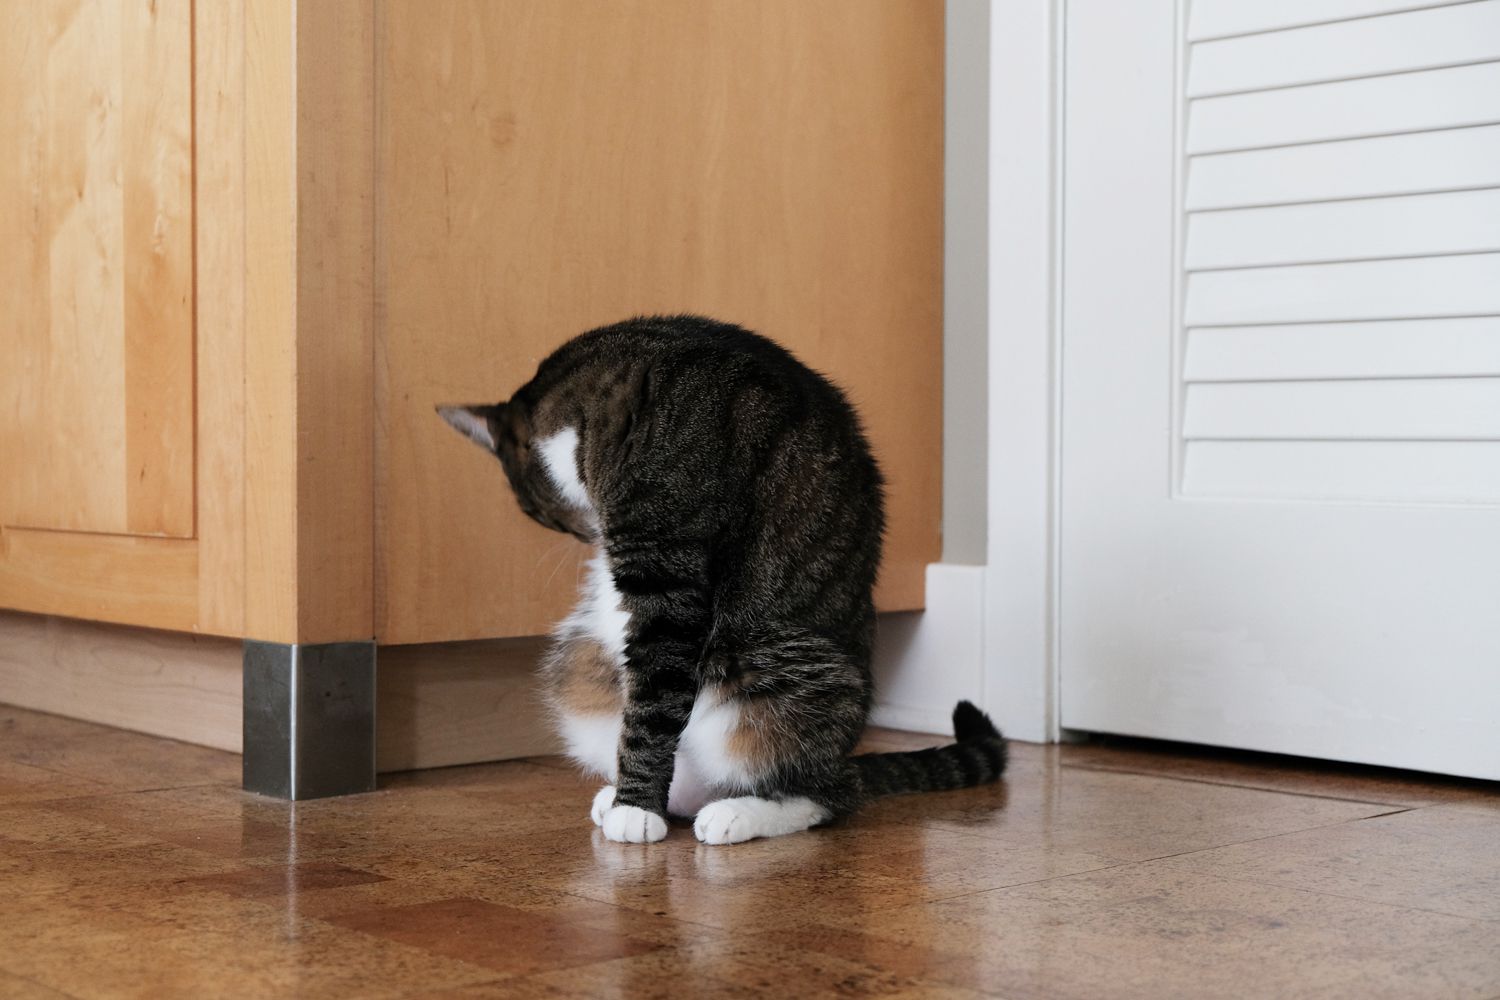 gato rayado se lame mientras se sienta en el suelo de baldosas dentro de casa